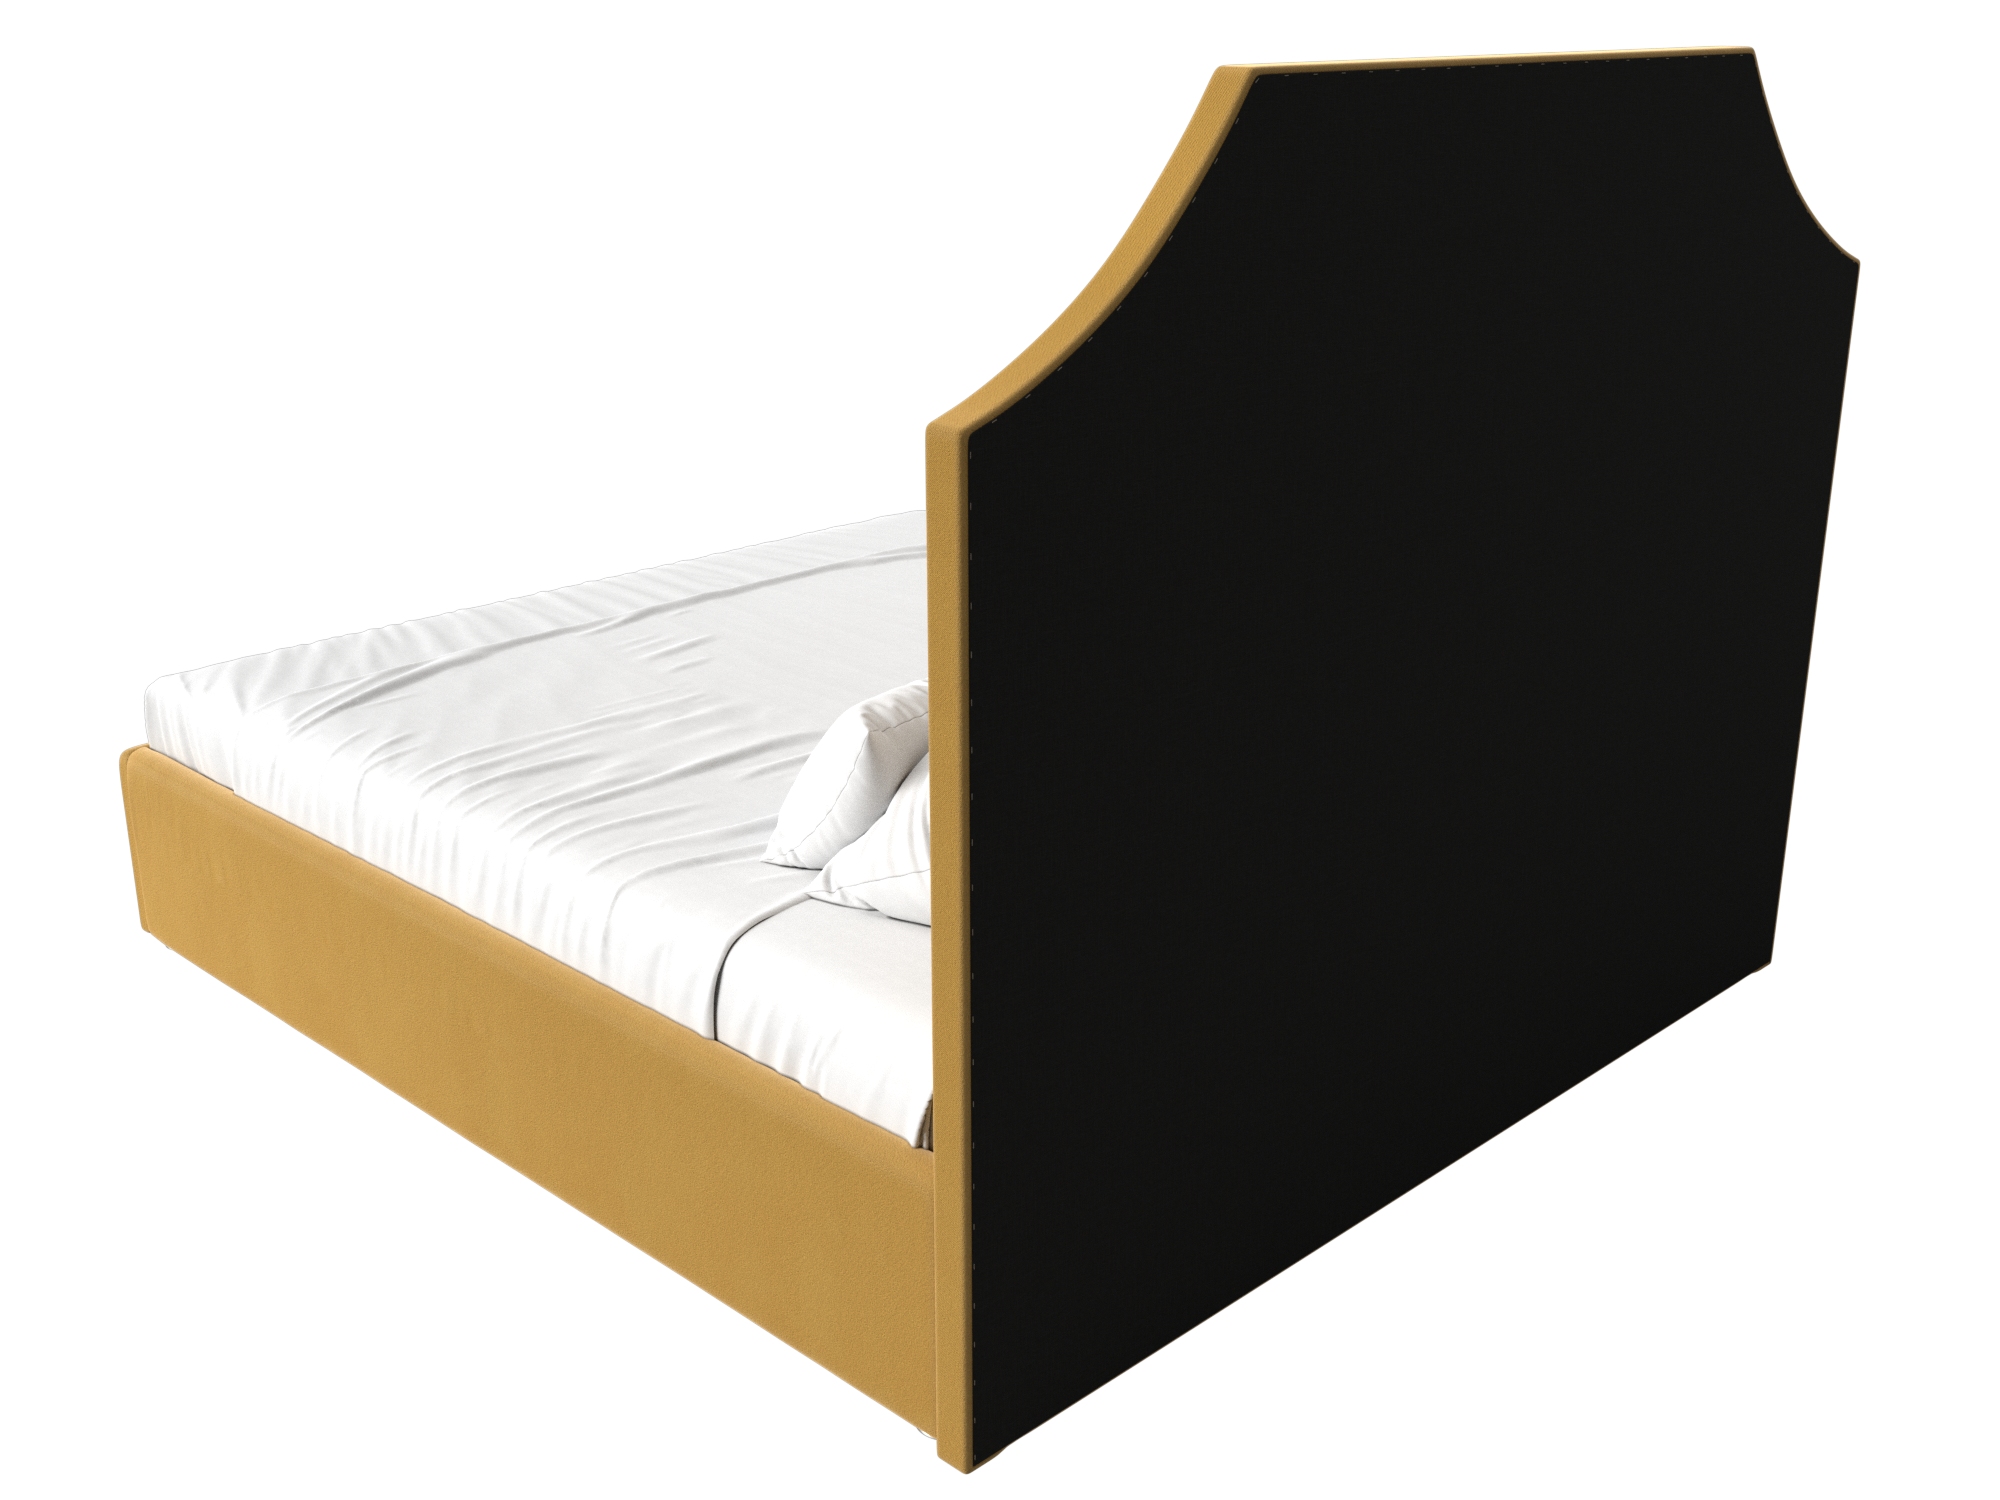 Интерьерная кровать Кантри 160 (Желтый)